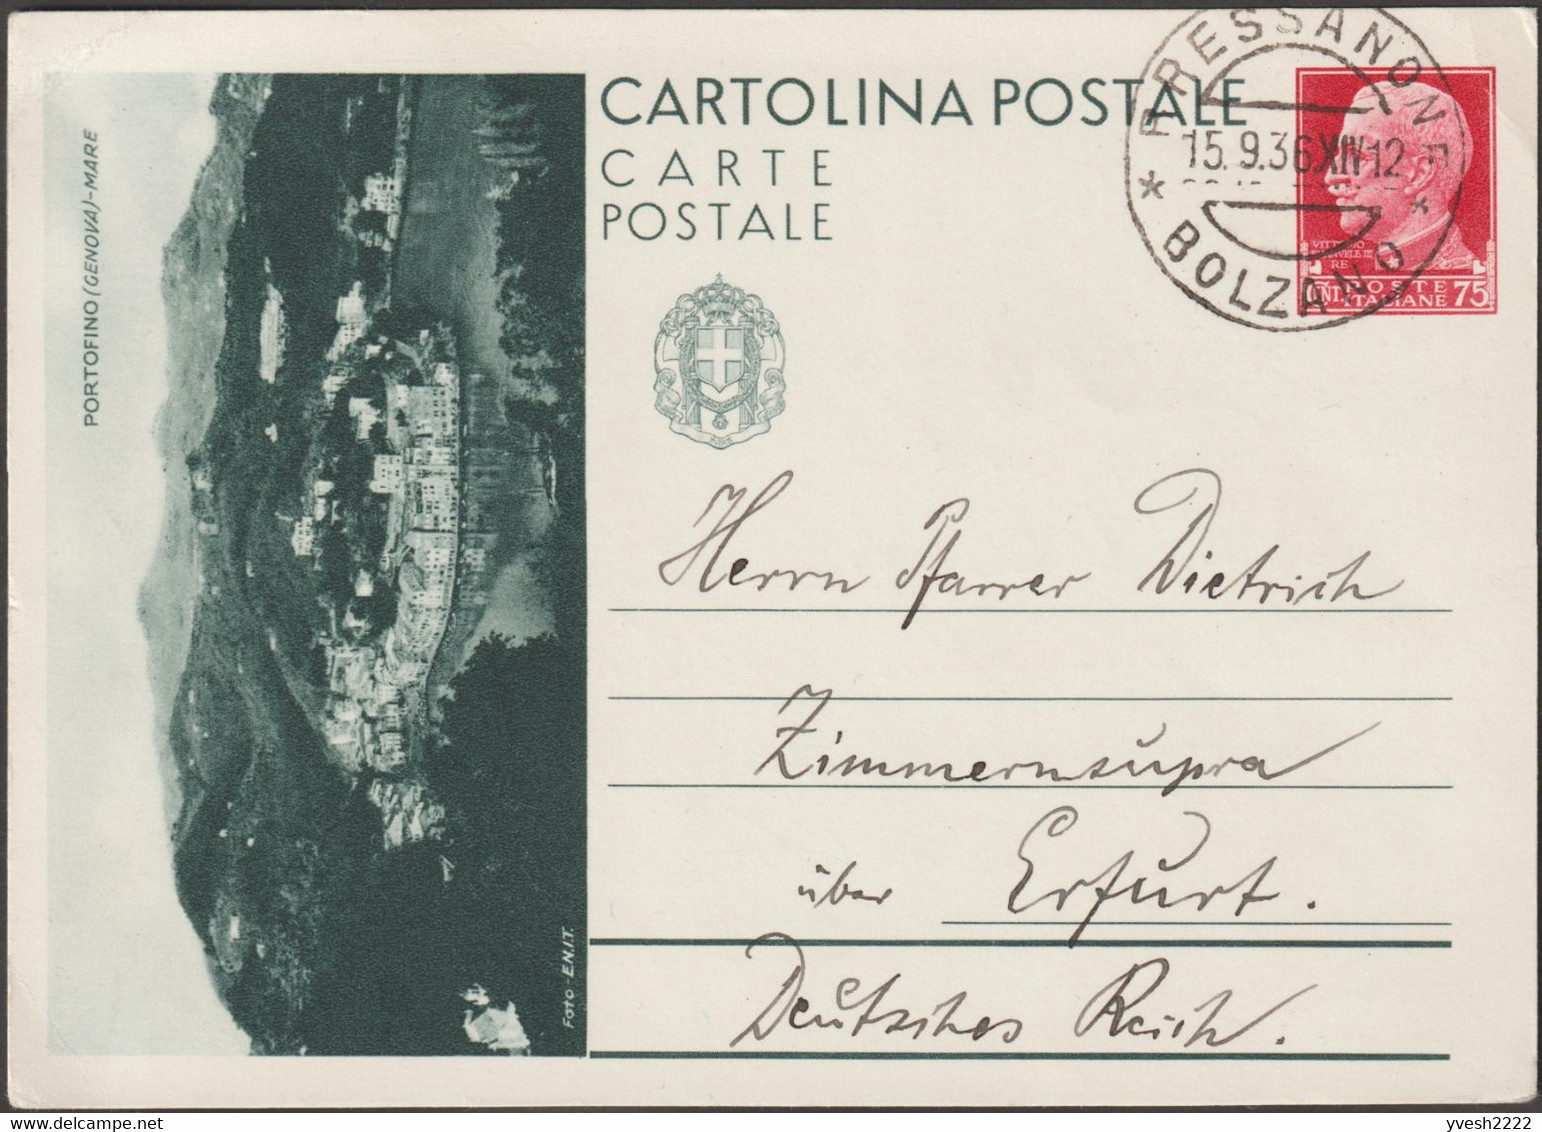 Italie 1936. Entier Postal Touristique Pour L'étranger. Portofino, Genova. Village Entre Mer Et Montagne. Bressanone - Montagne